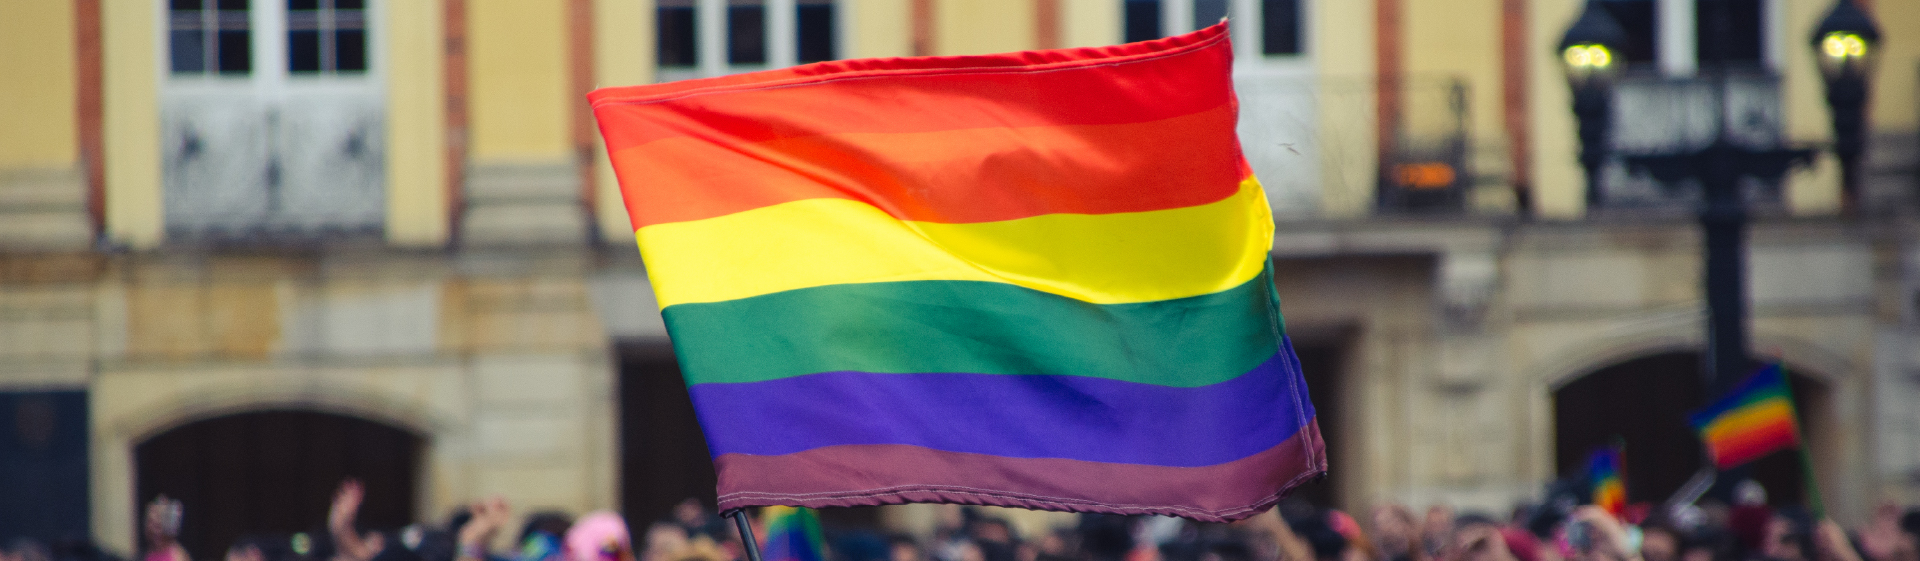 Subreporte y bienestar de la población LGBT en Bogotá: línea de base y lecciones a futuro para el análisis de datos a nivel nacional